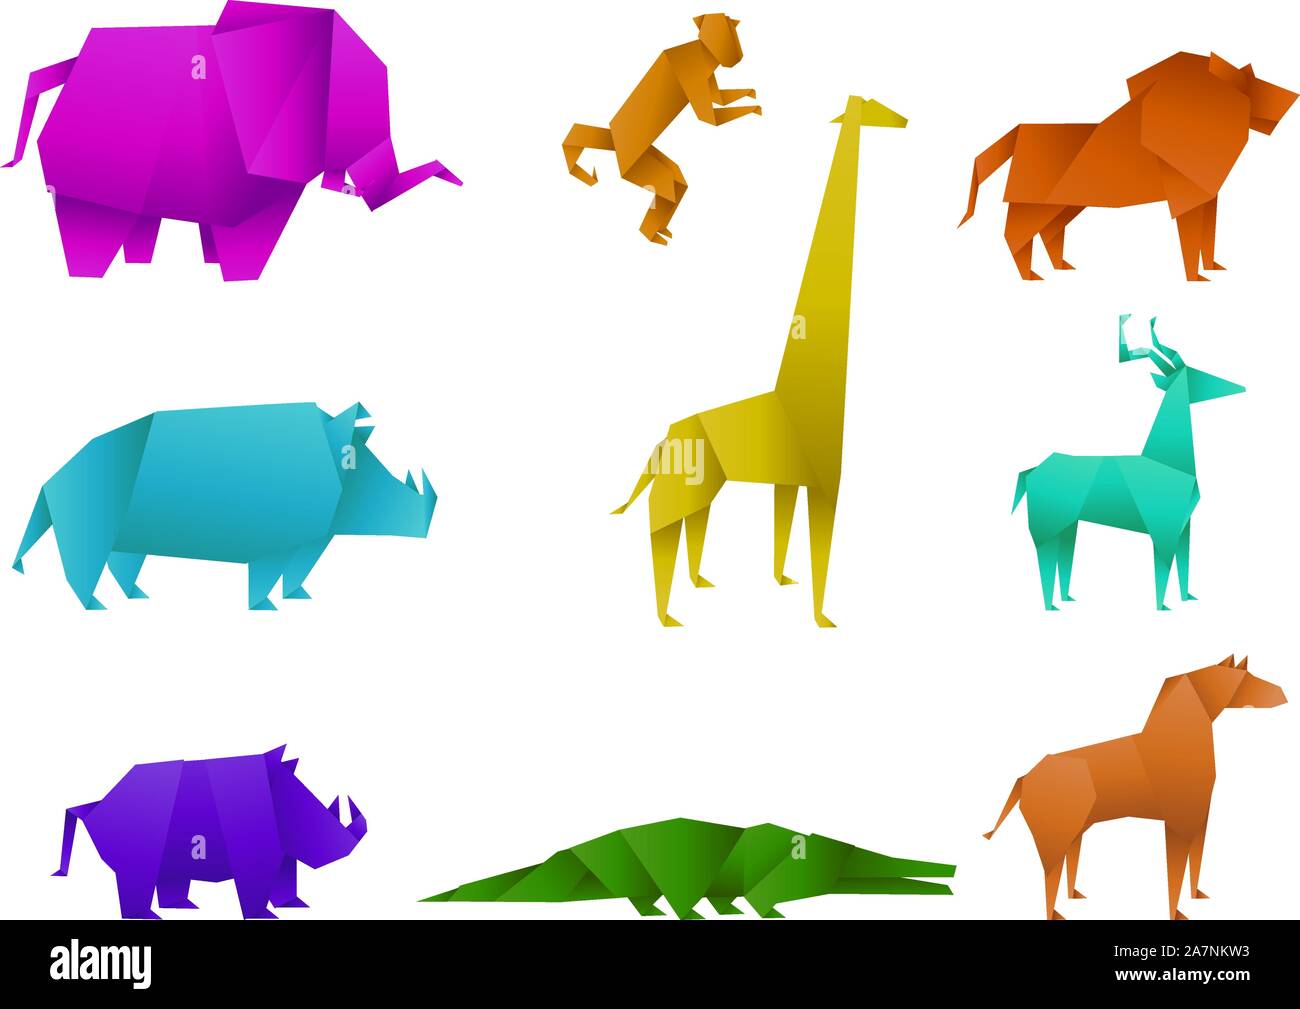 Icon Set d'animaux colorés, avec l'origami origami leopard, panther origami origami, lion, tigre, origami origami origami Cougar, Jaguar, moine d'origami Illustration de Vecteur